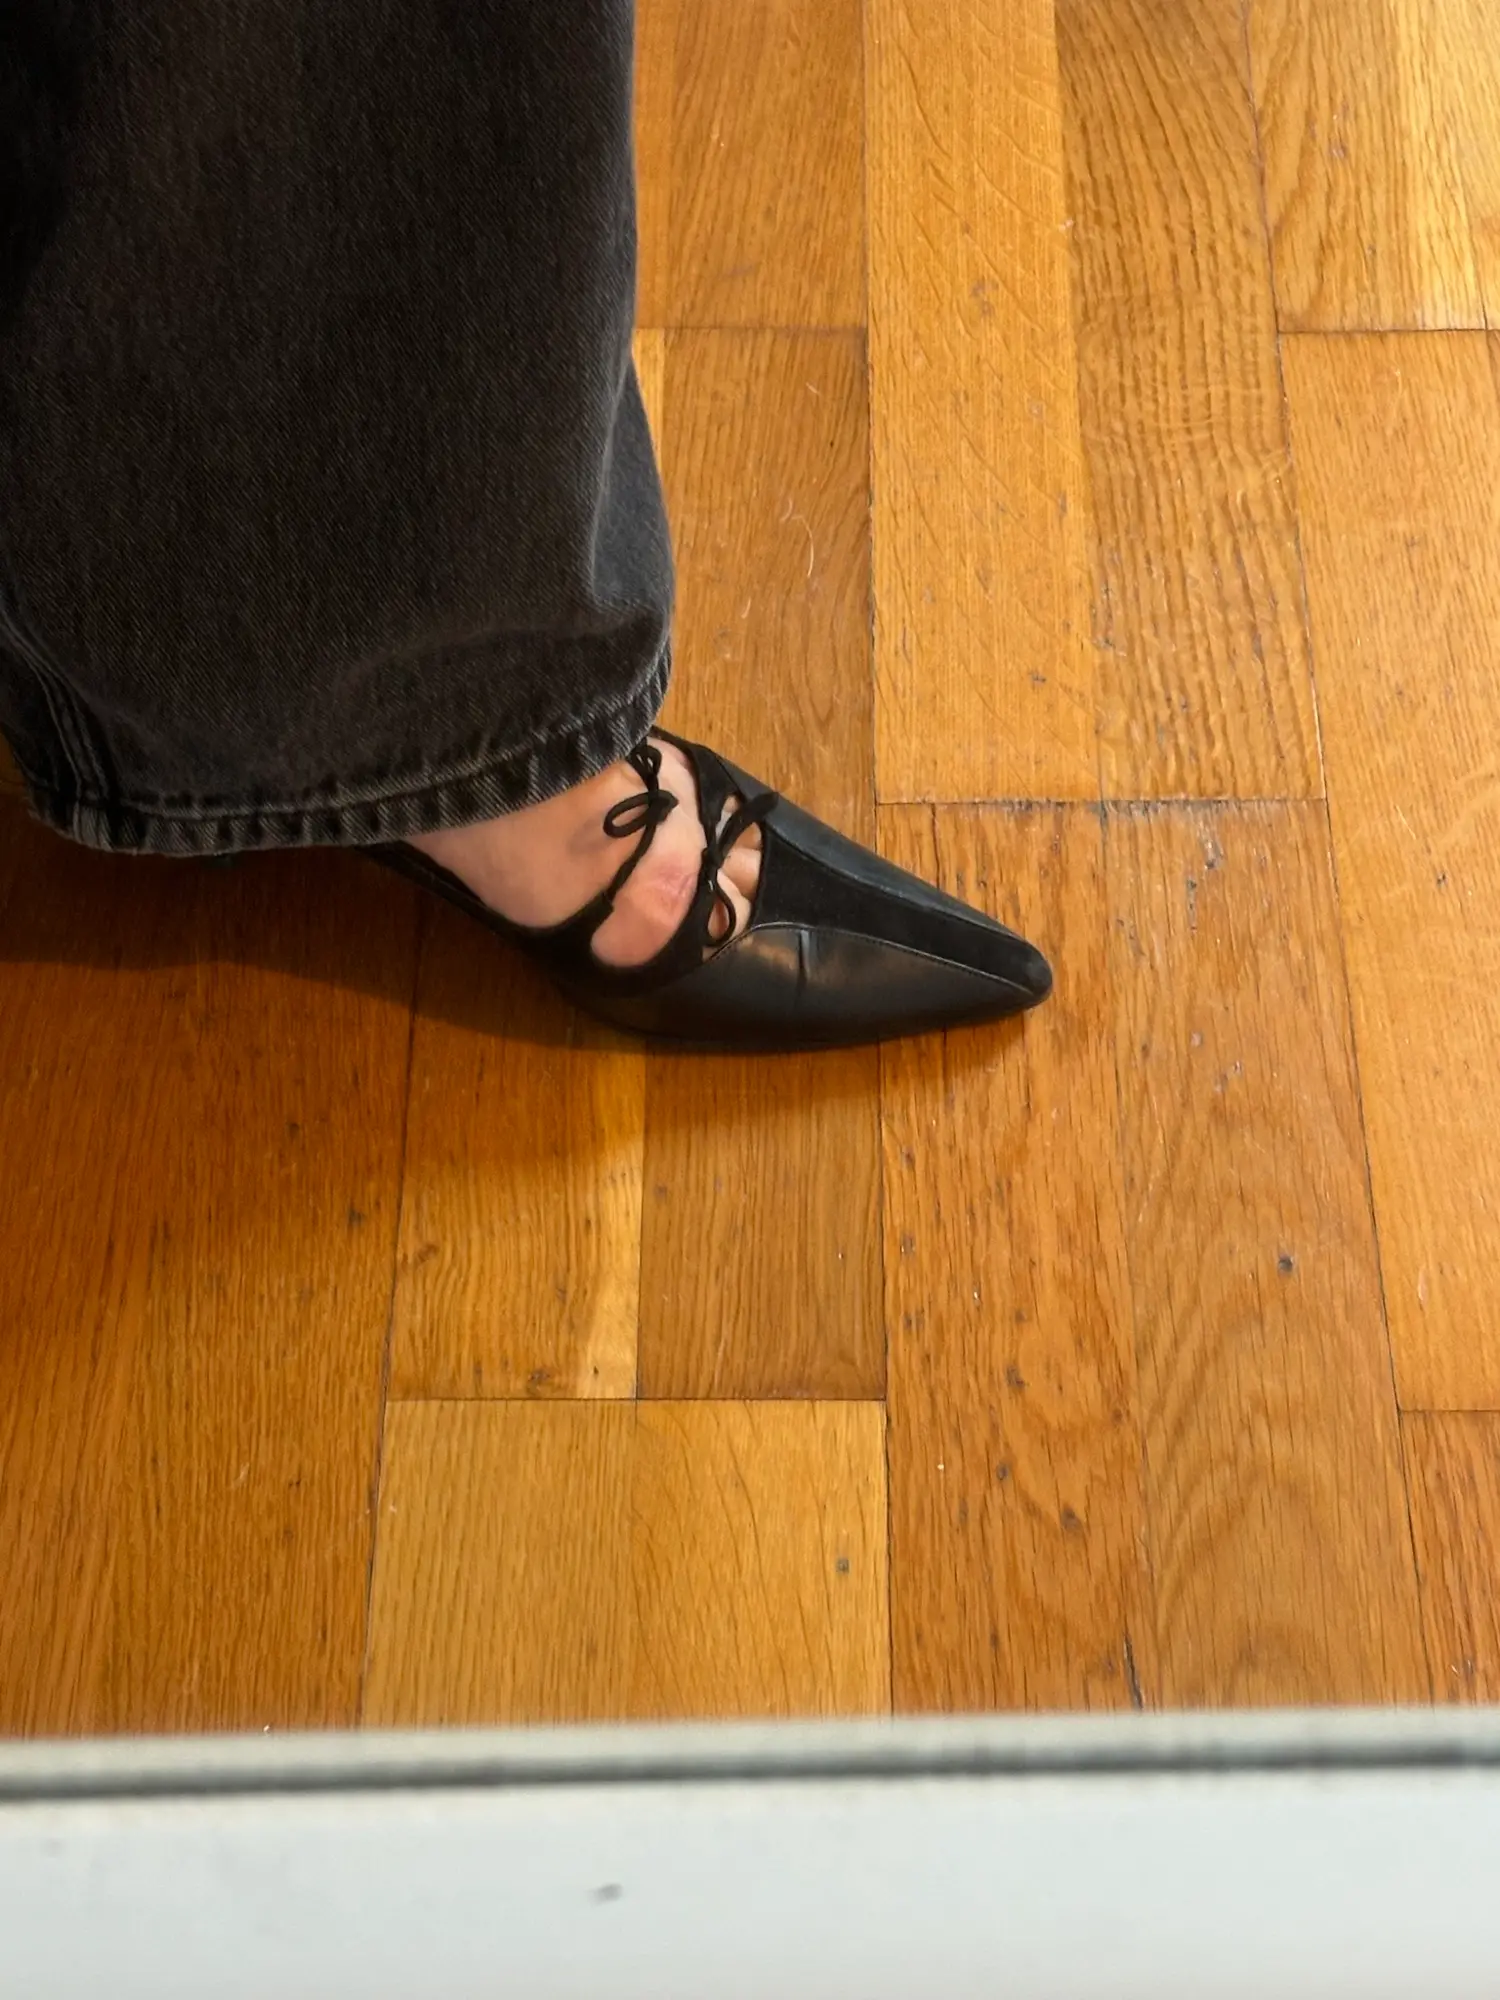 Manolo Blahnik heels